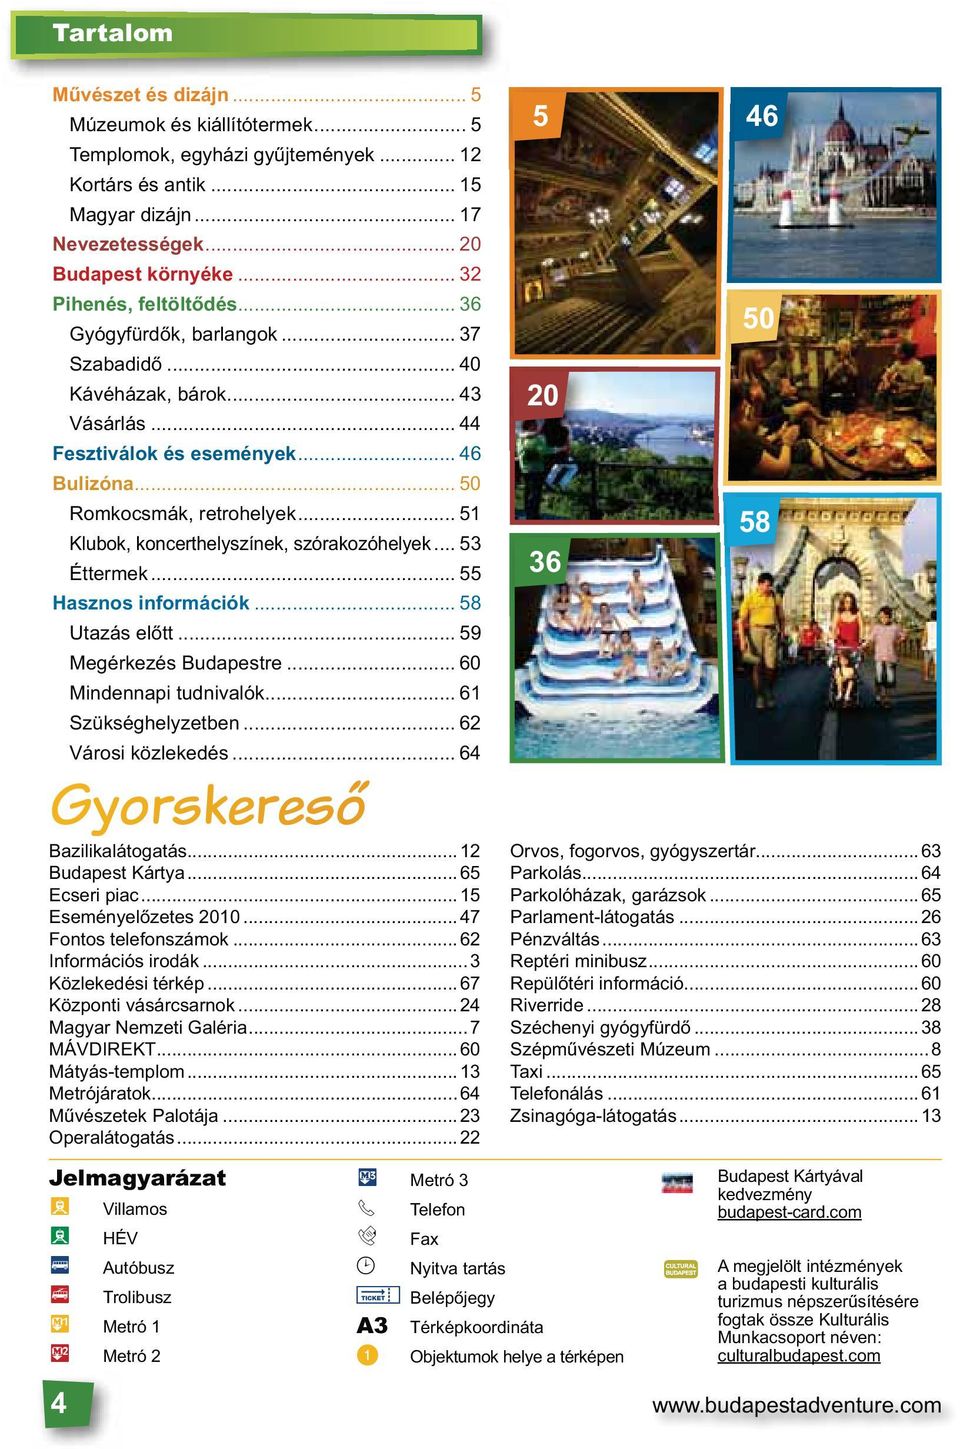 .. 51 Klubok, koncerthelyszínek, szórakozóhelyek... 53 Éttermek... 55 Hasznos információk... 58 Utazás előtt... 59 Megérkezés Budapestre... 60 Mindennapi tudnivalók... 61 Szükséghelyzetben.